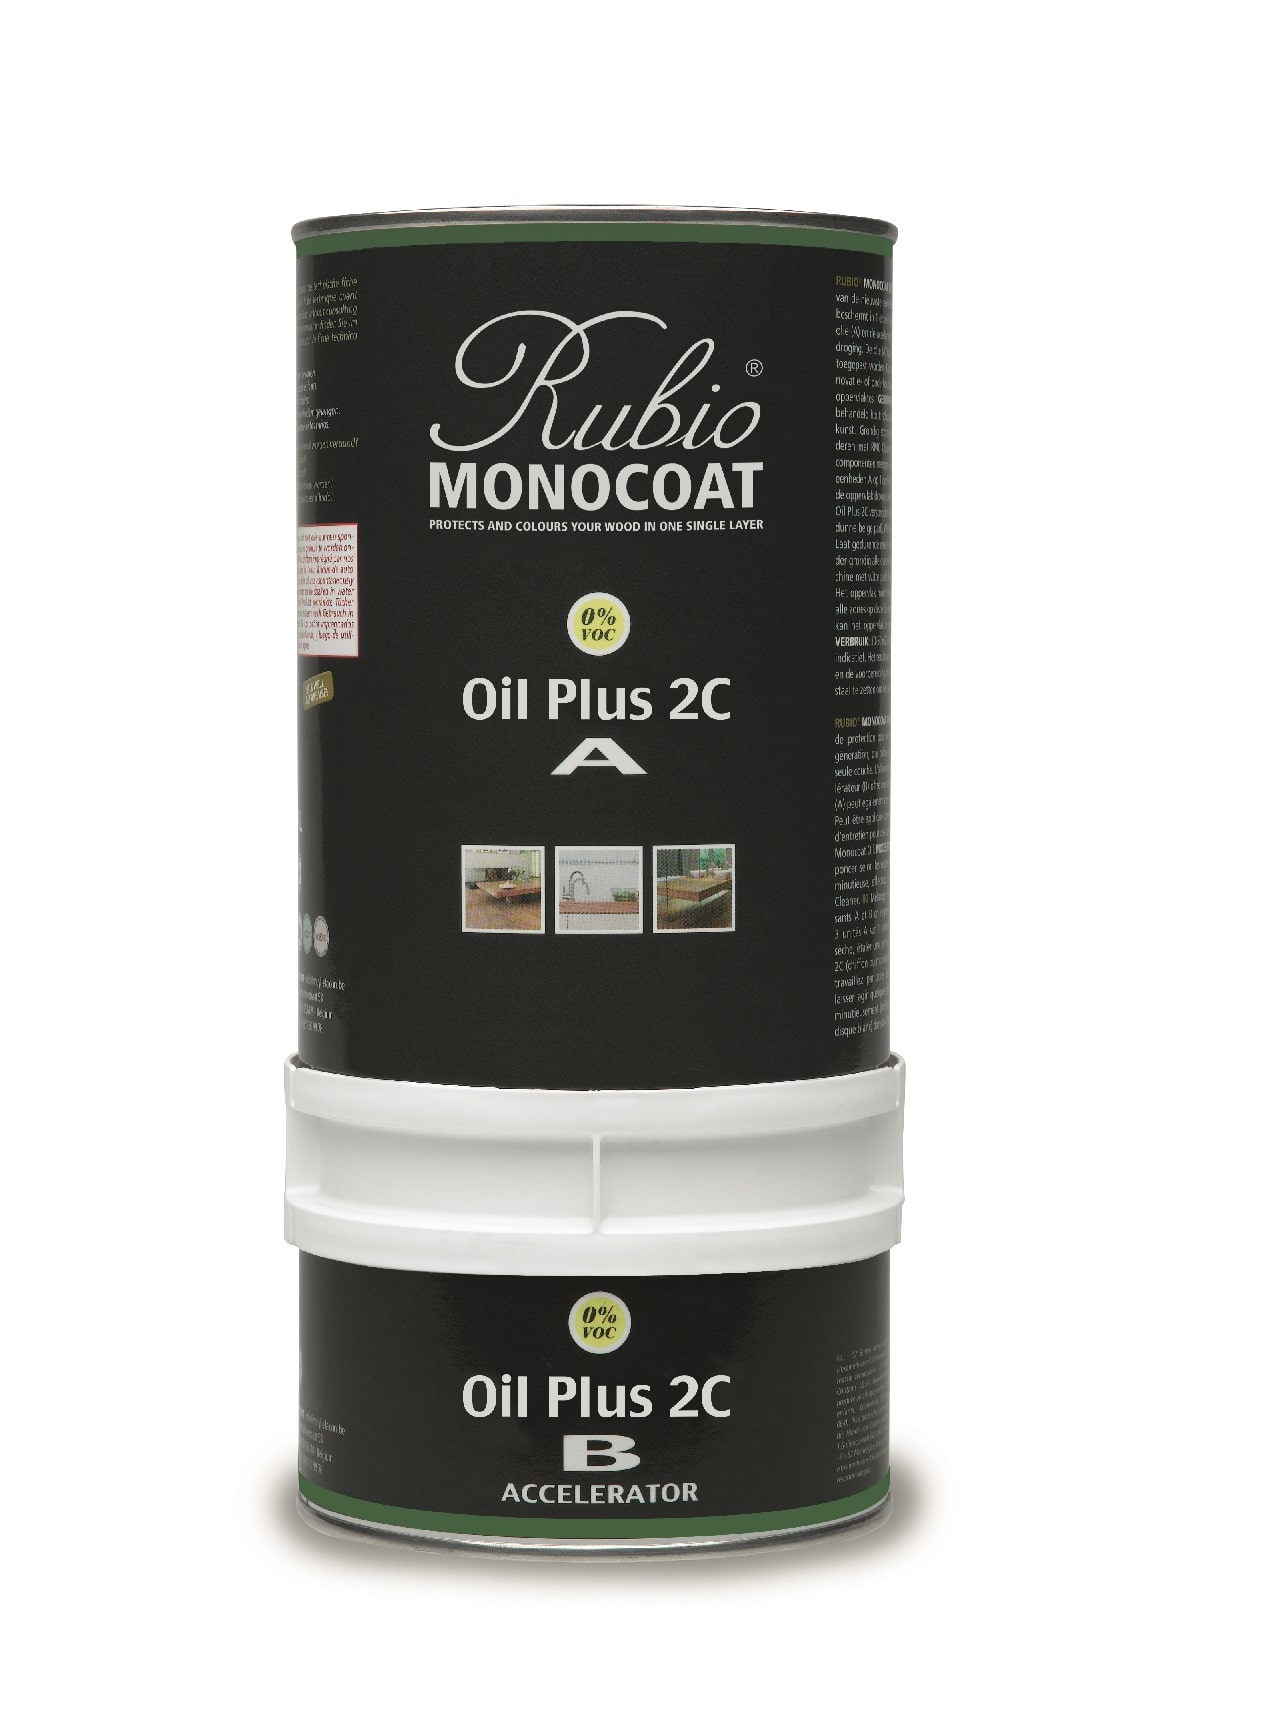 Billede af Rubio Monocoat olie Plus 2C Smoke 5% 275 ml inkl. accelerator 75 ml.